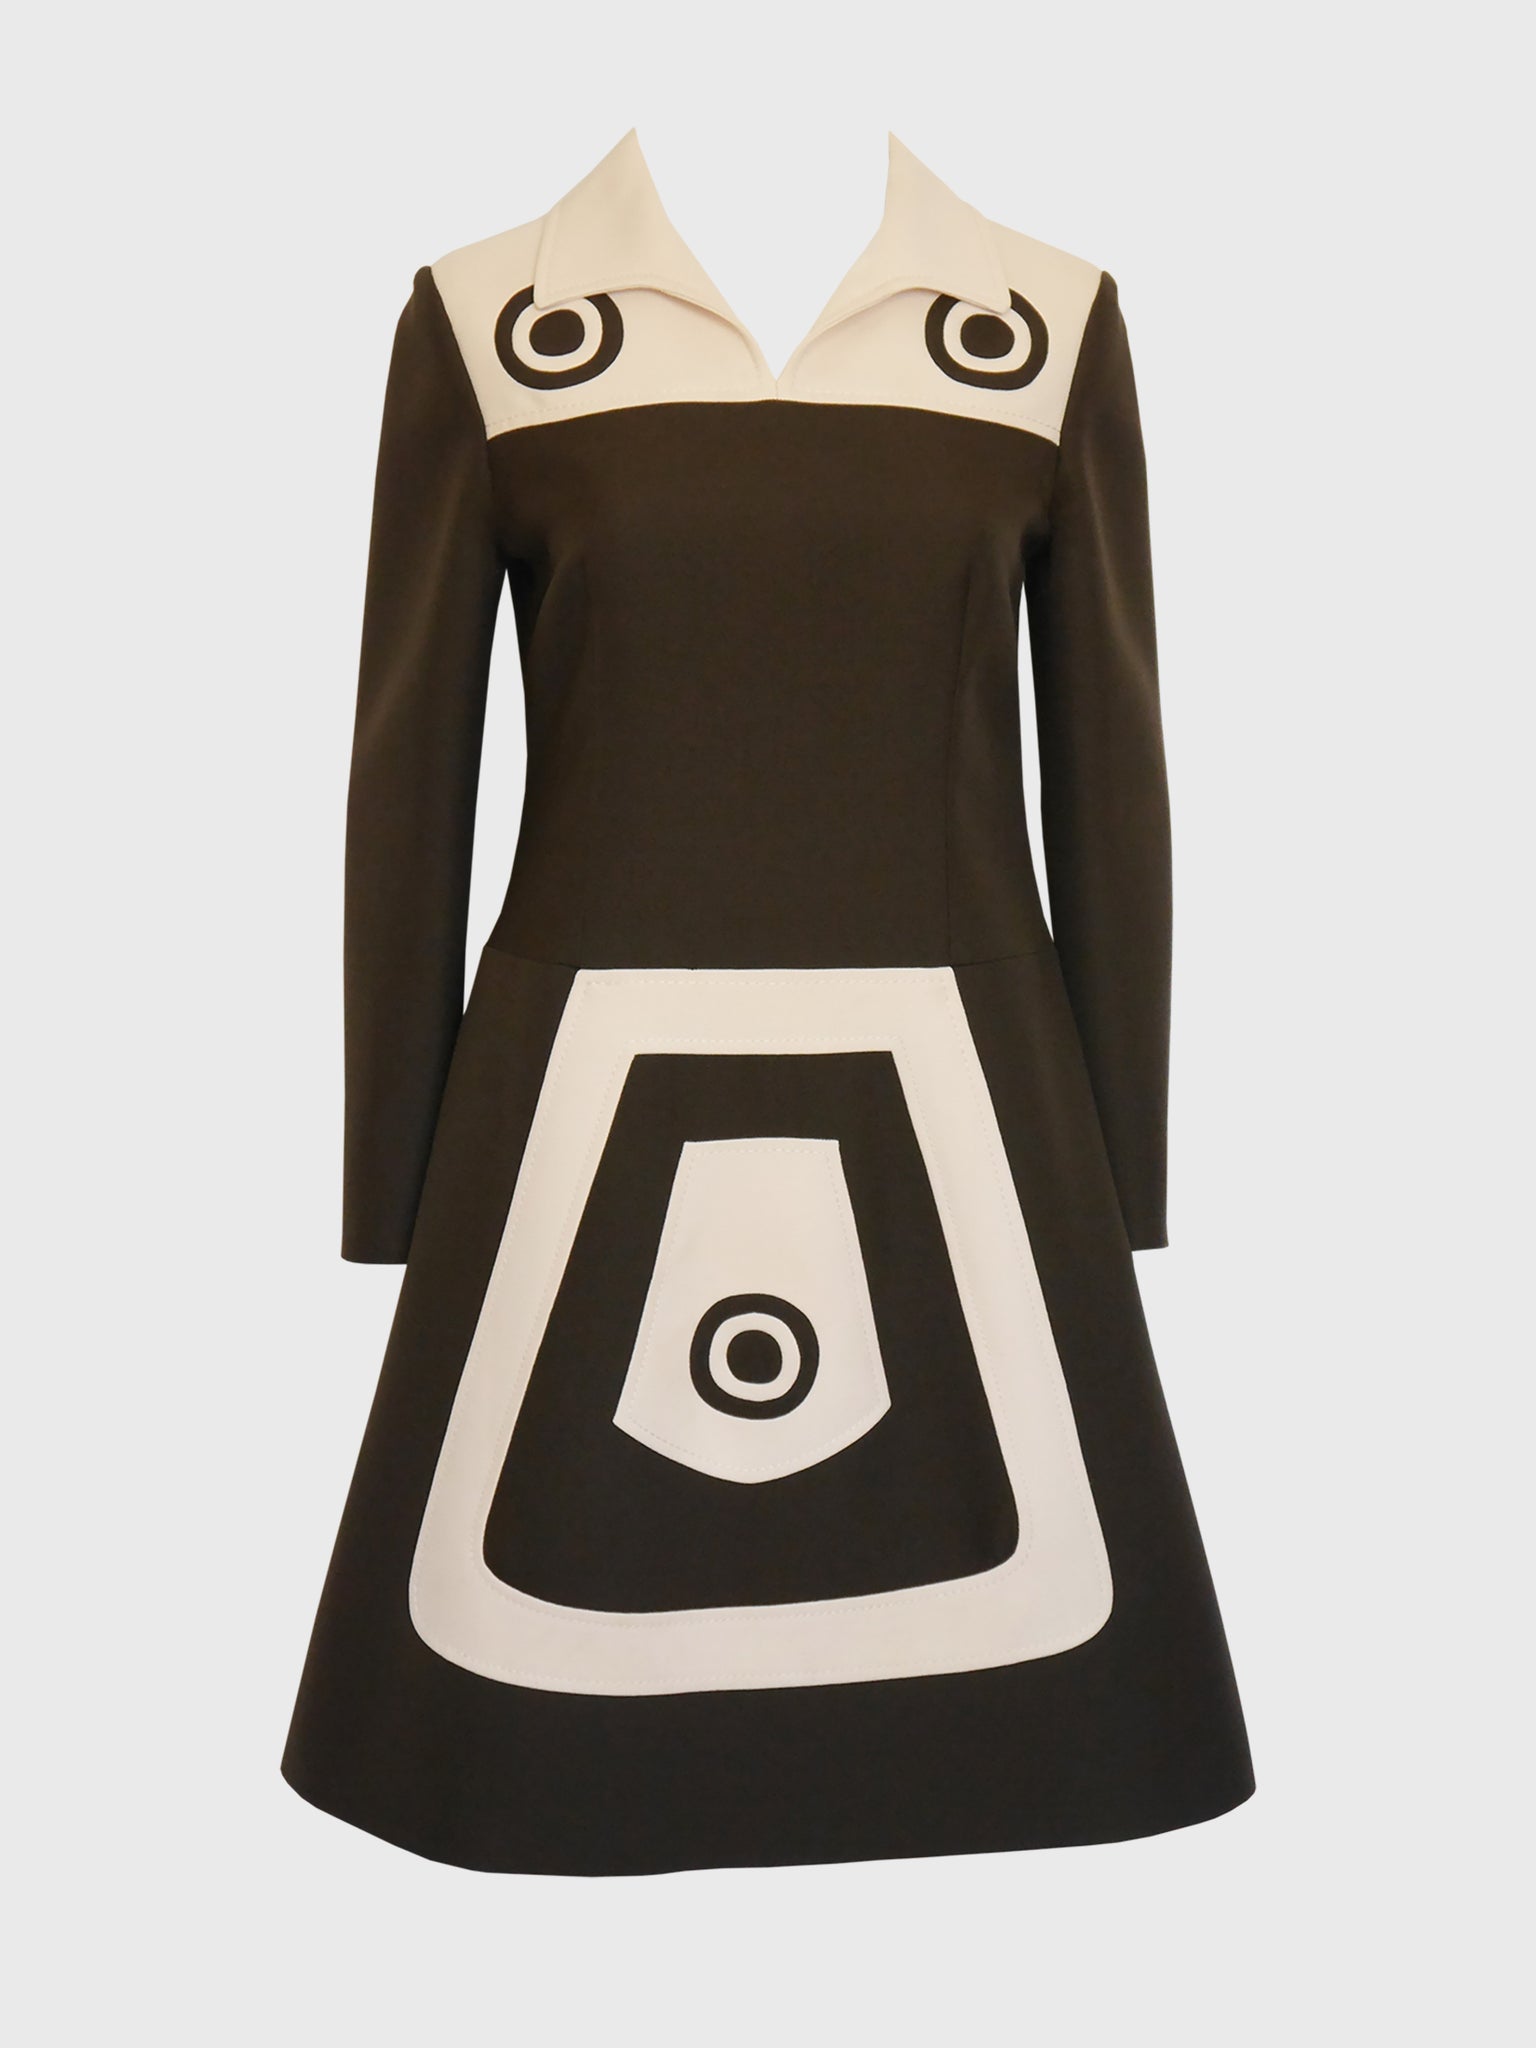 LOUIS FÉRAUD c. 1969 Vintage Space Age Mod Colour Block Graphic Dress